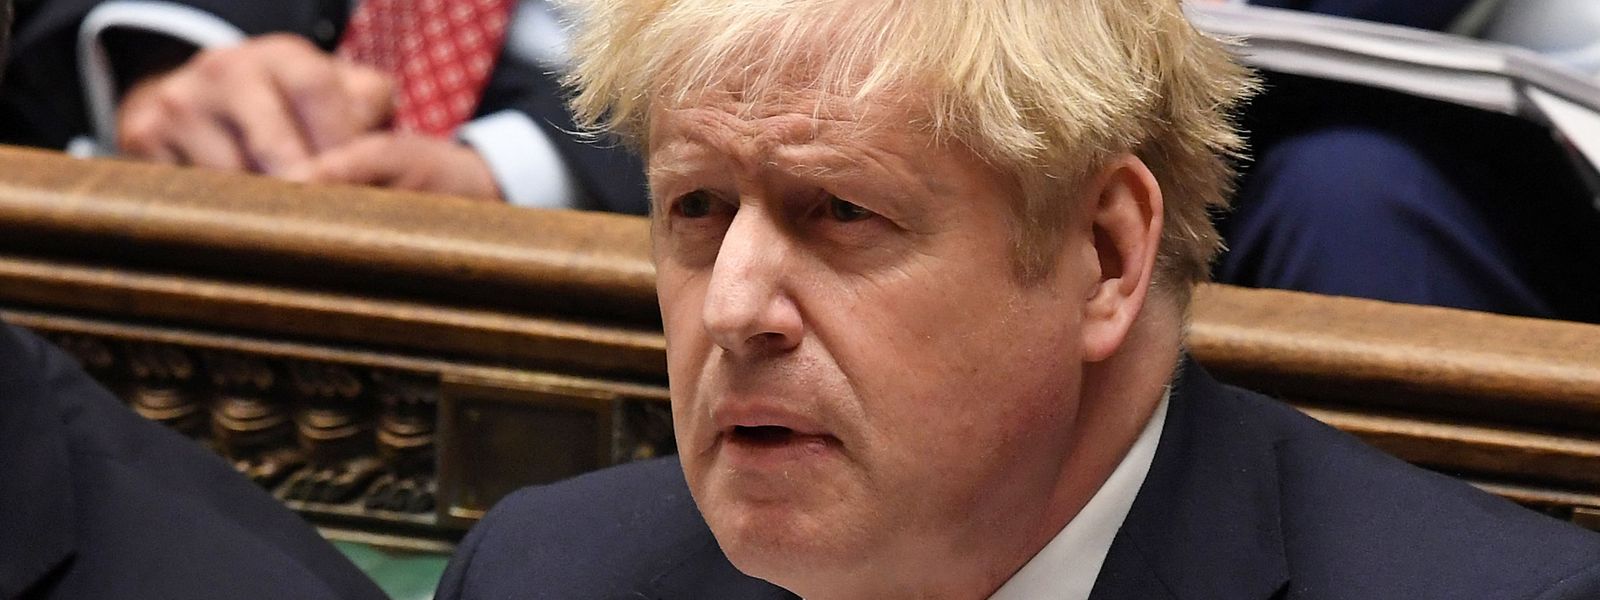 Der britische Premierminister Boris Johnson steht im Zusammenhang mit der Partygate-Affäre mächtig unter Druck.